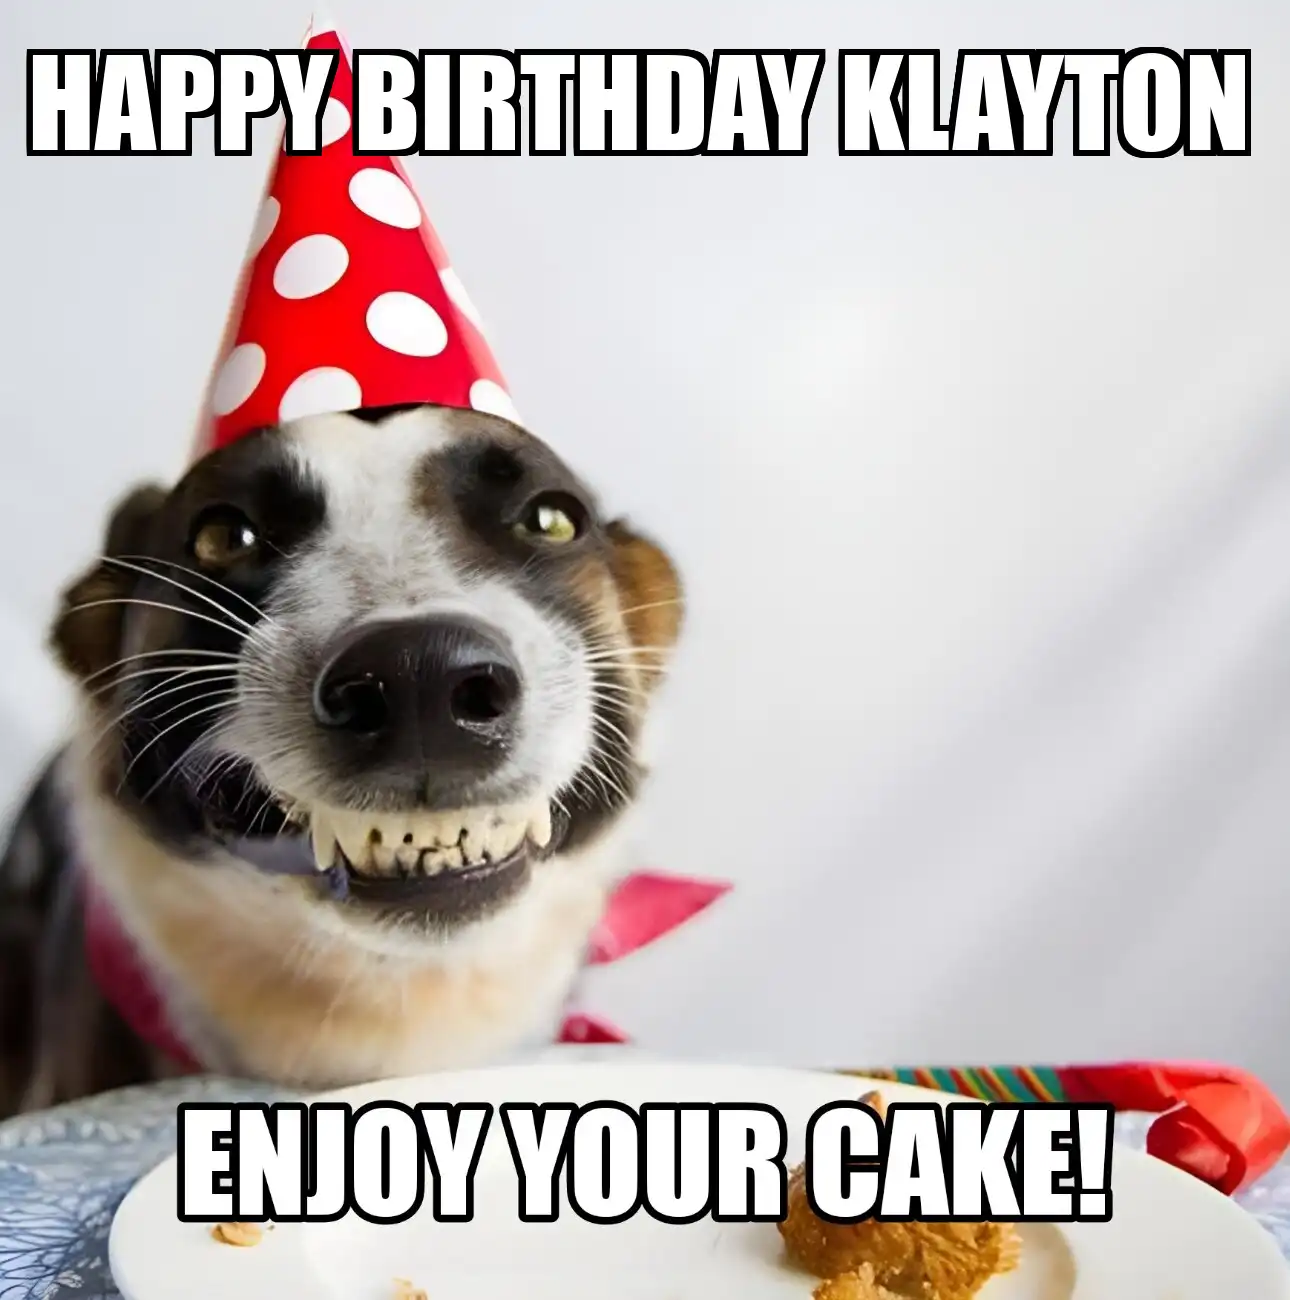 Happy Birthday Klayton Enjoy Your Cake Dog Meme